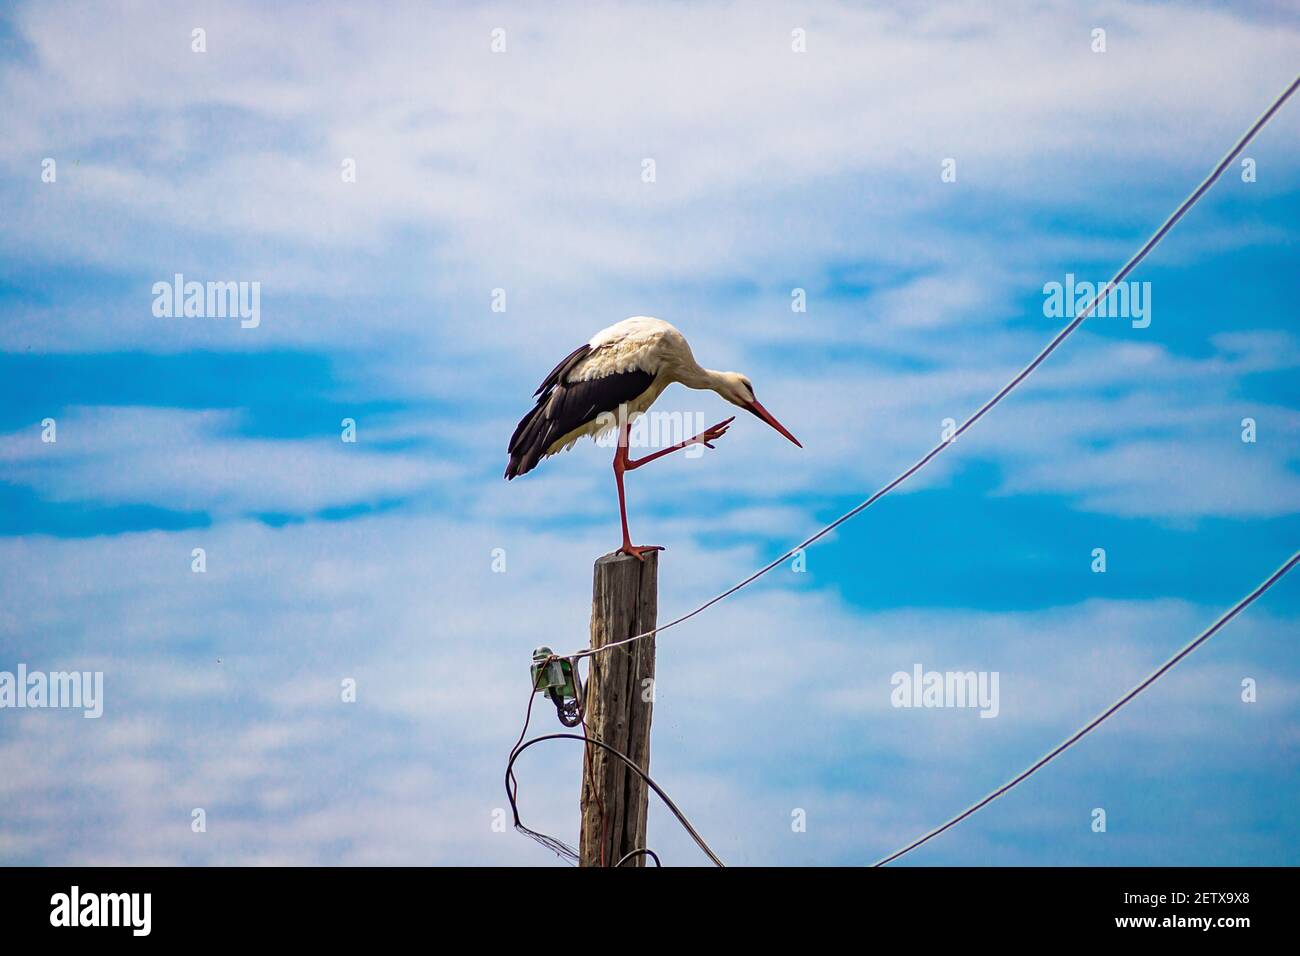 Cicogna bianca sul palo nel villaggio. È un uccello elegante, con gambe lunghe e becco, con piume bianche e nere. Foto Stock